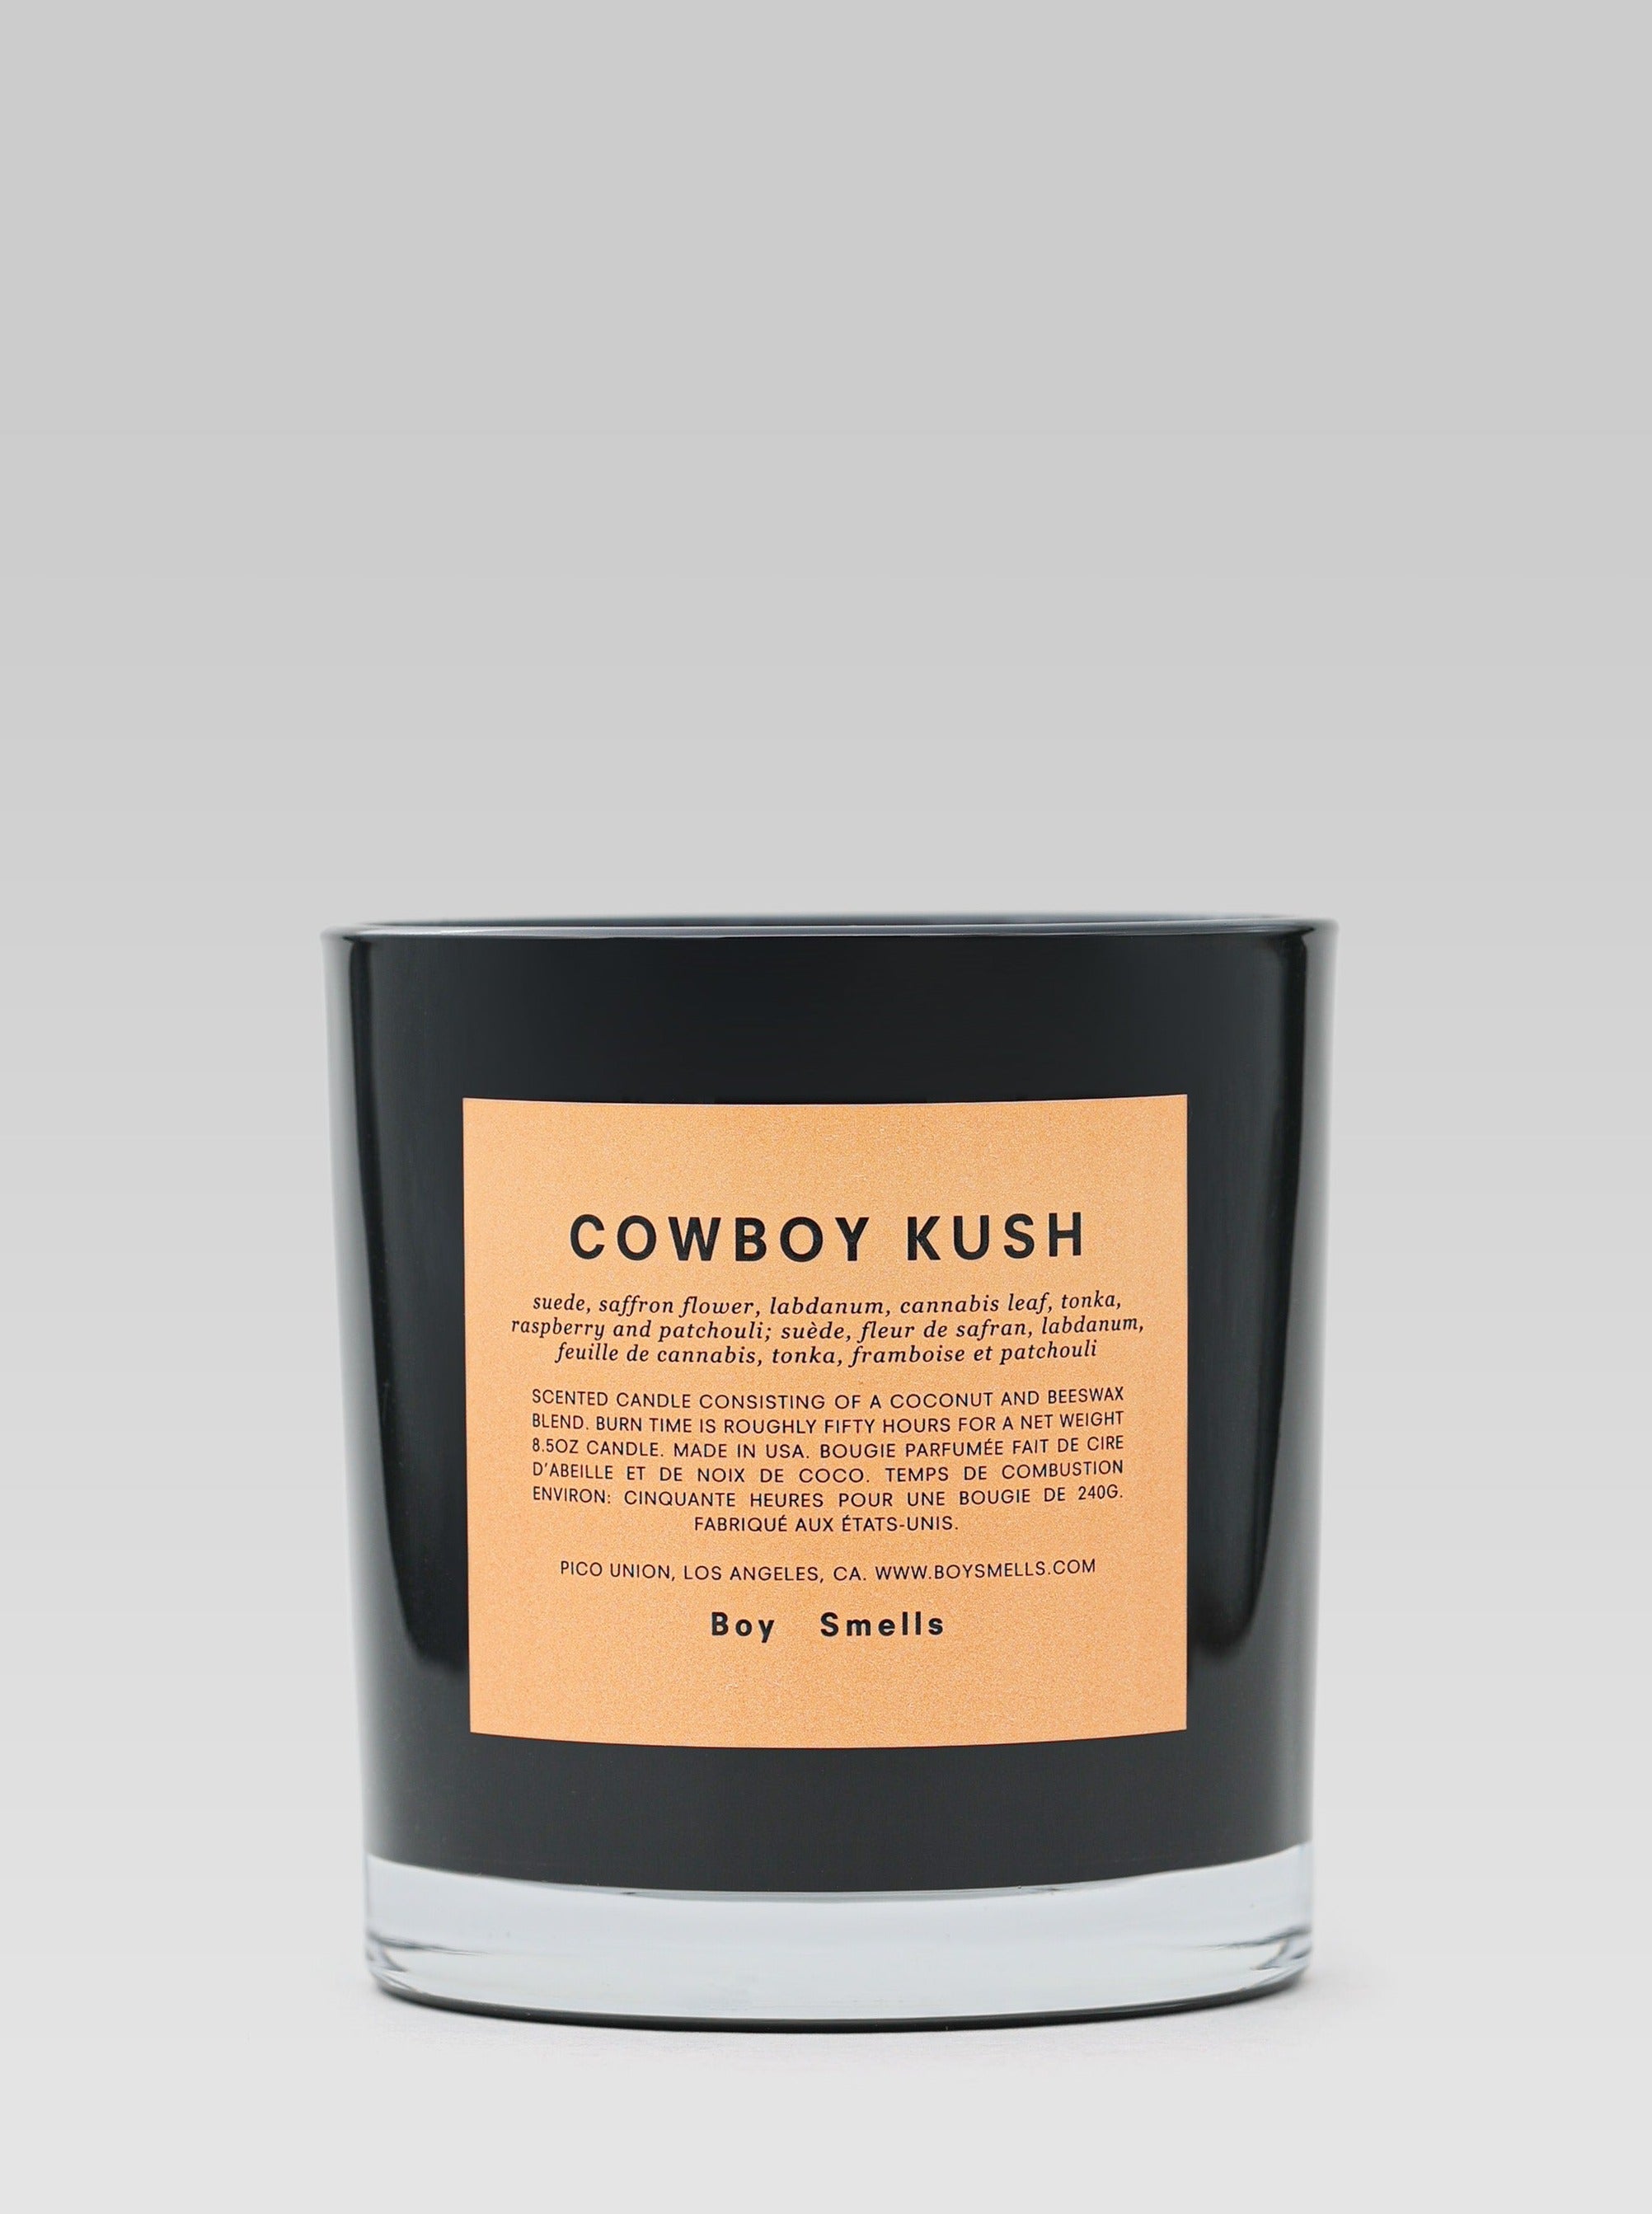 Boy Smells Cowboy Kush Candle product shot